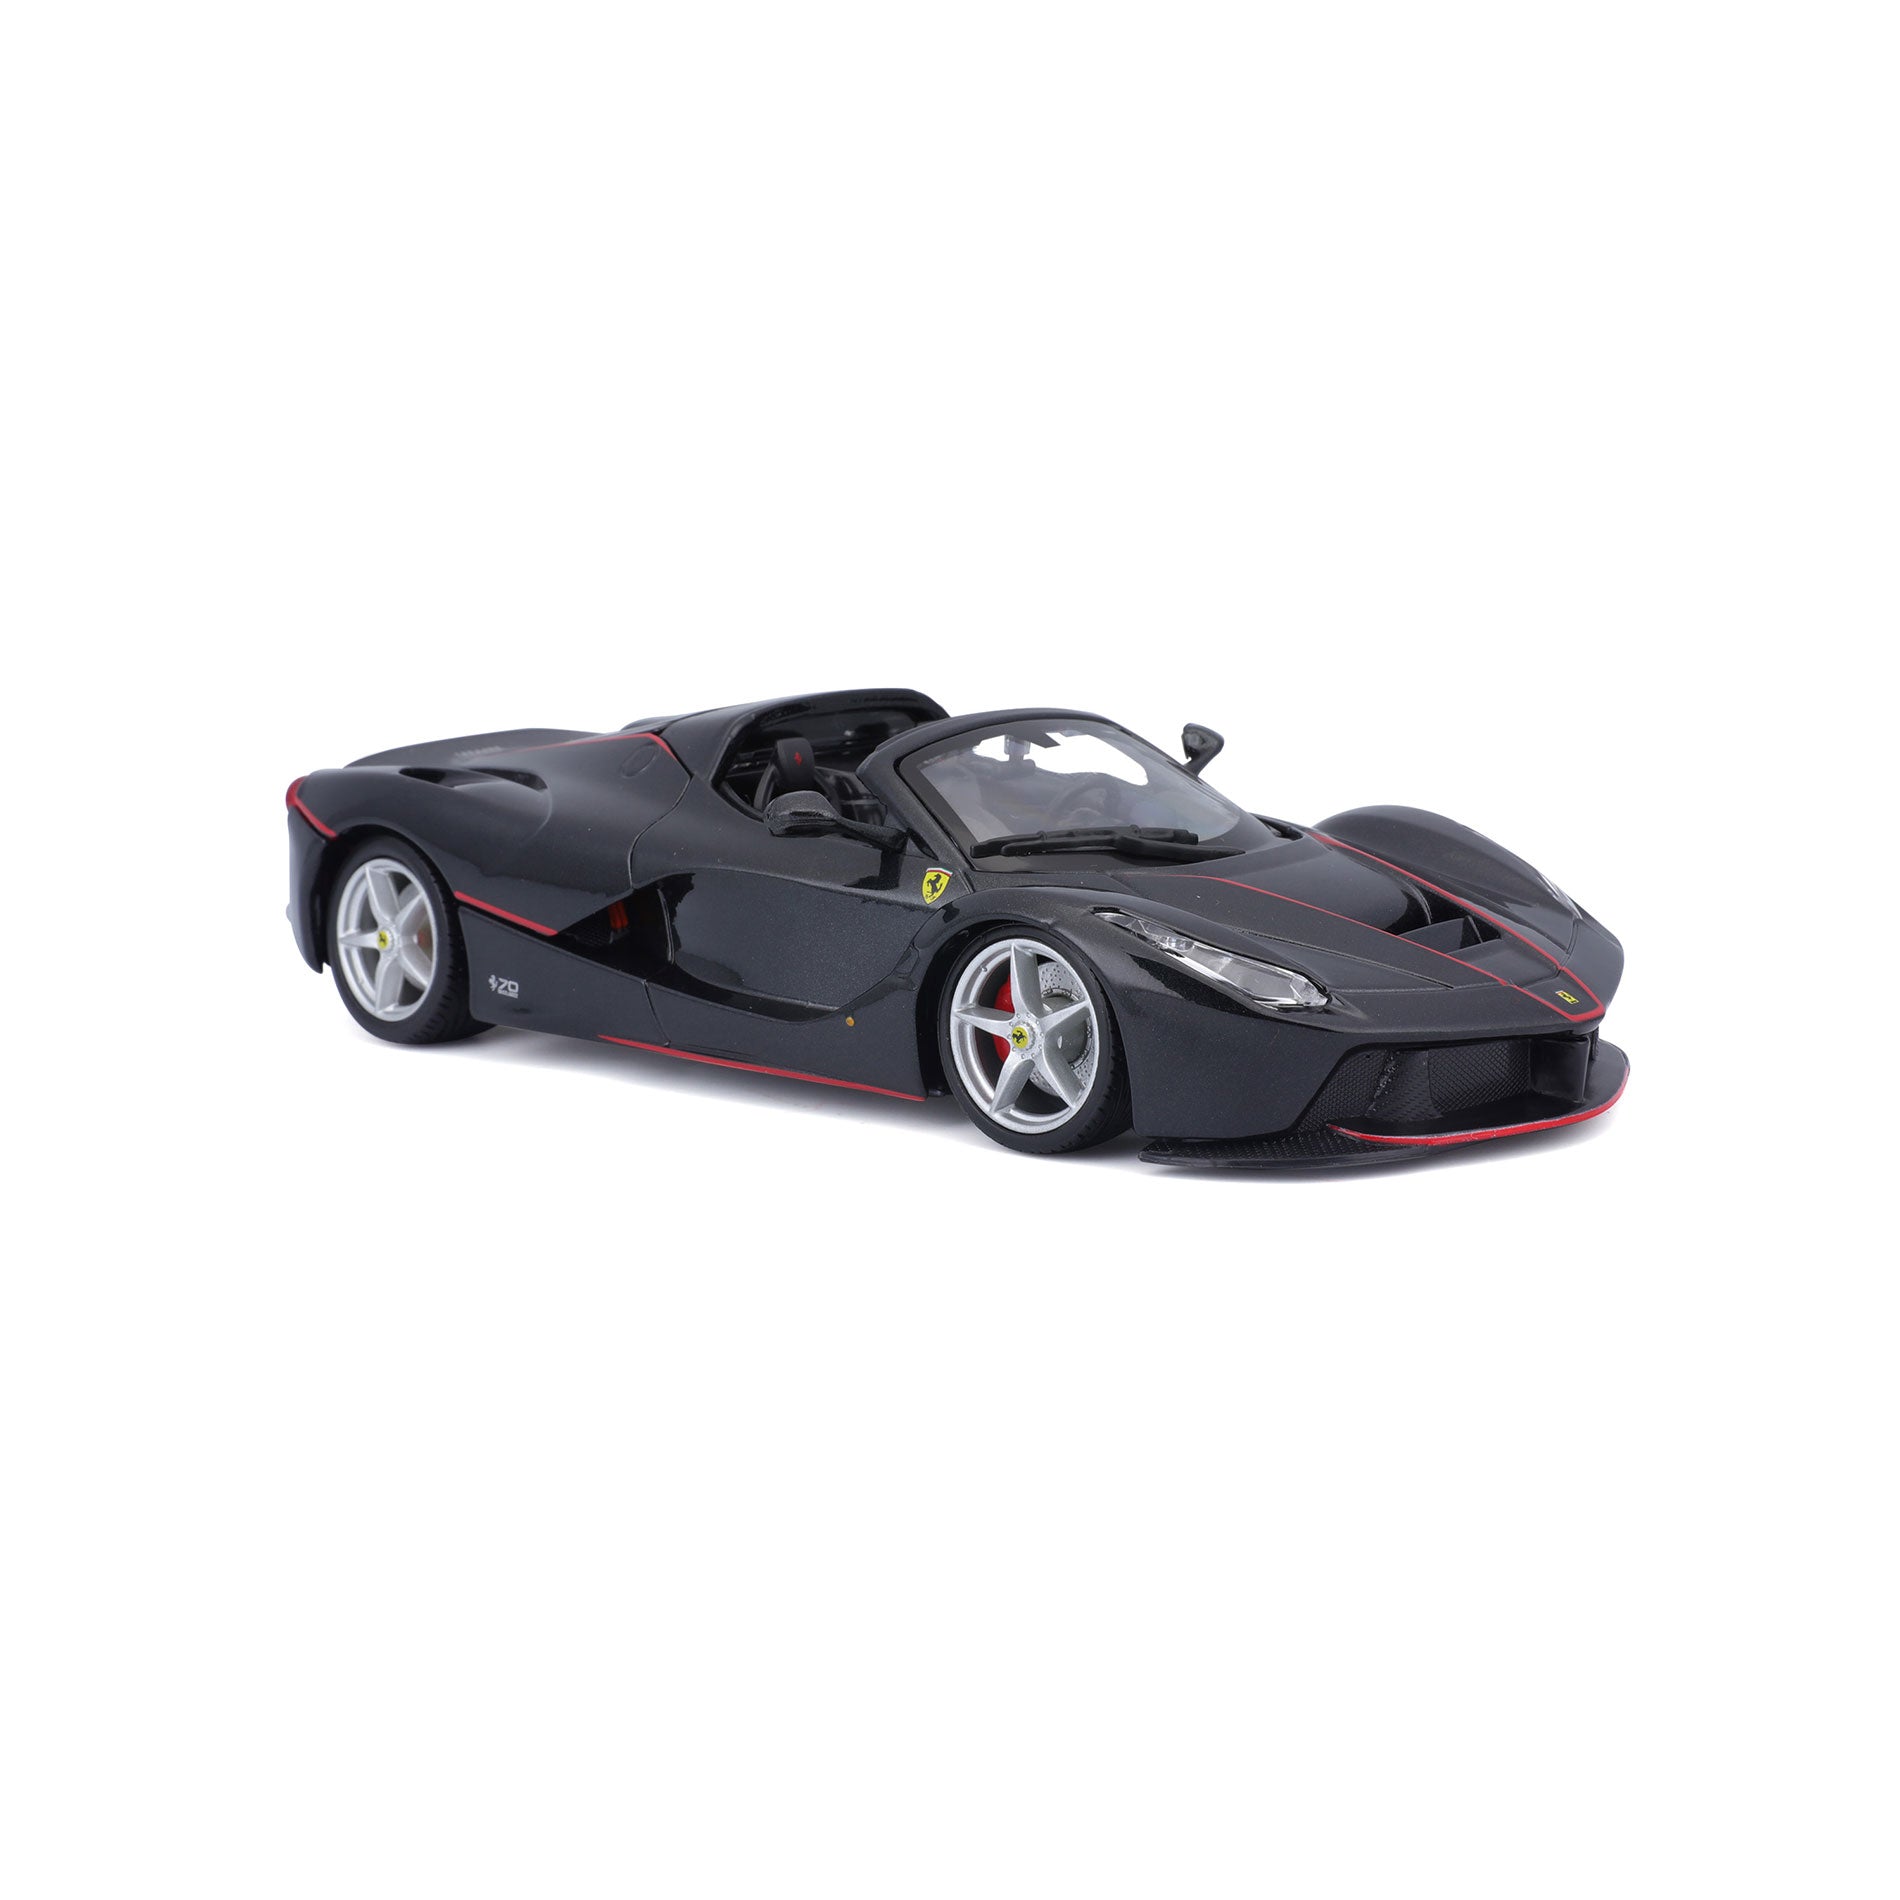 Bburago 1:24 Ferrari LaFerrari Aperta 70th Anniversary Collection negro  18-26022BK modelo coche 18-26022BK 4893993010660 8719247461018